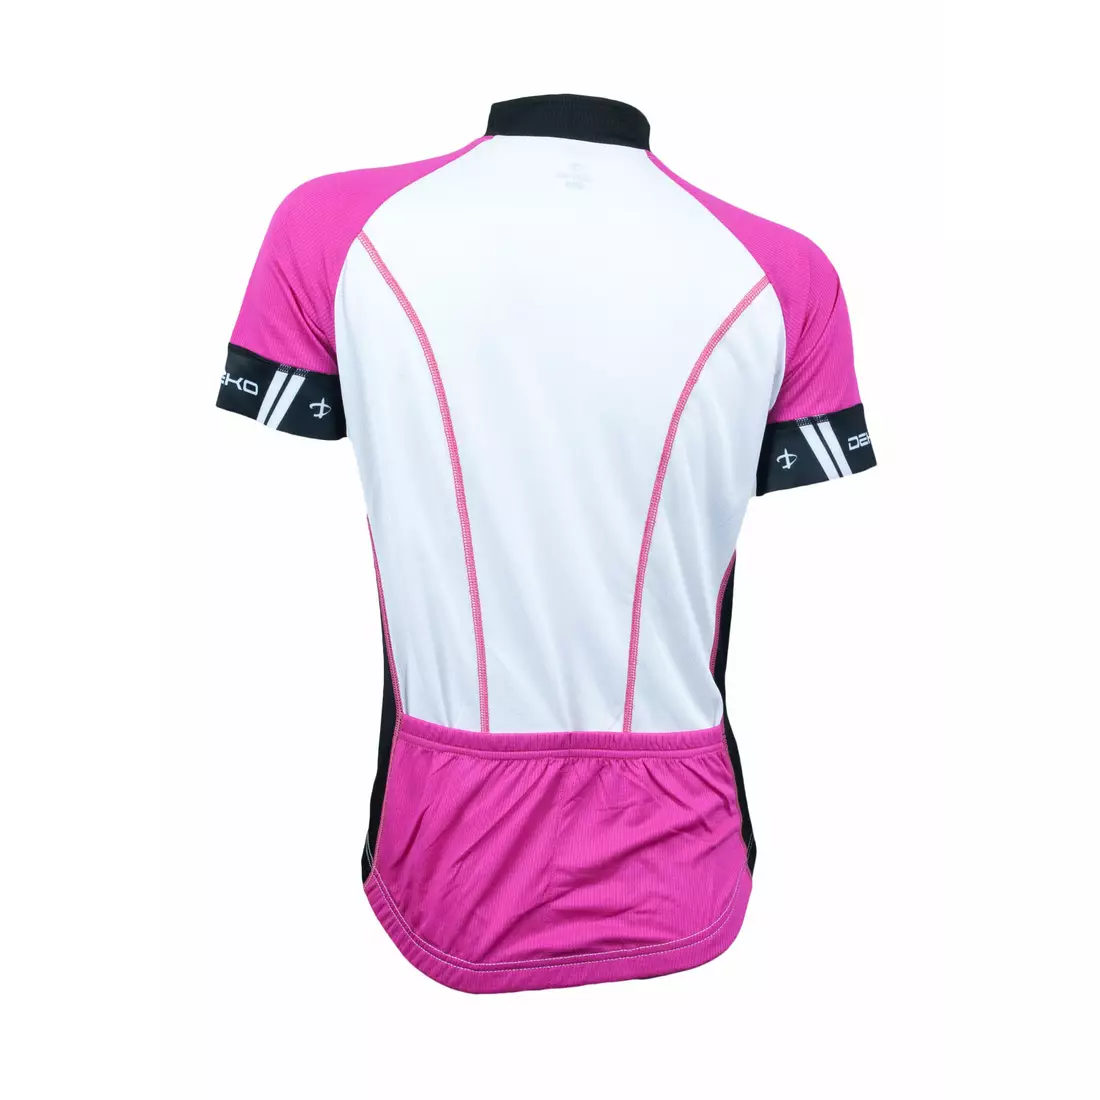 Dámský cyklistický komplet DEKO ASPIDE: dres + kraťasy, šle, černo-růžový